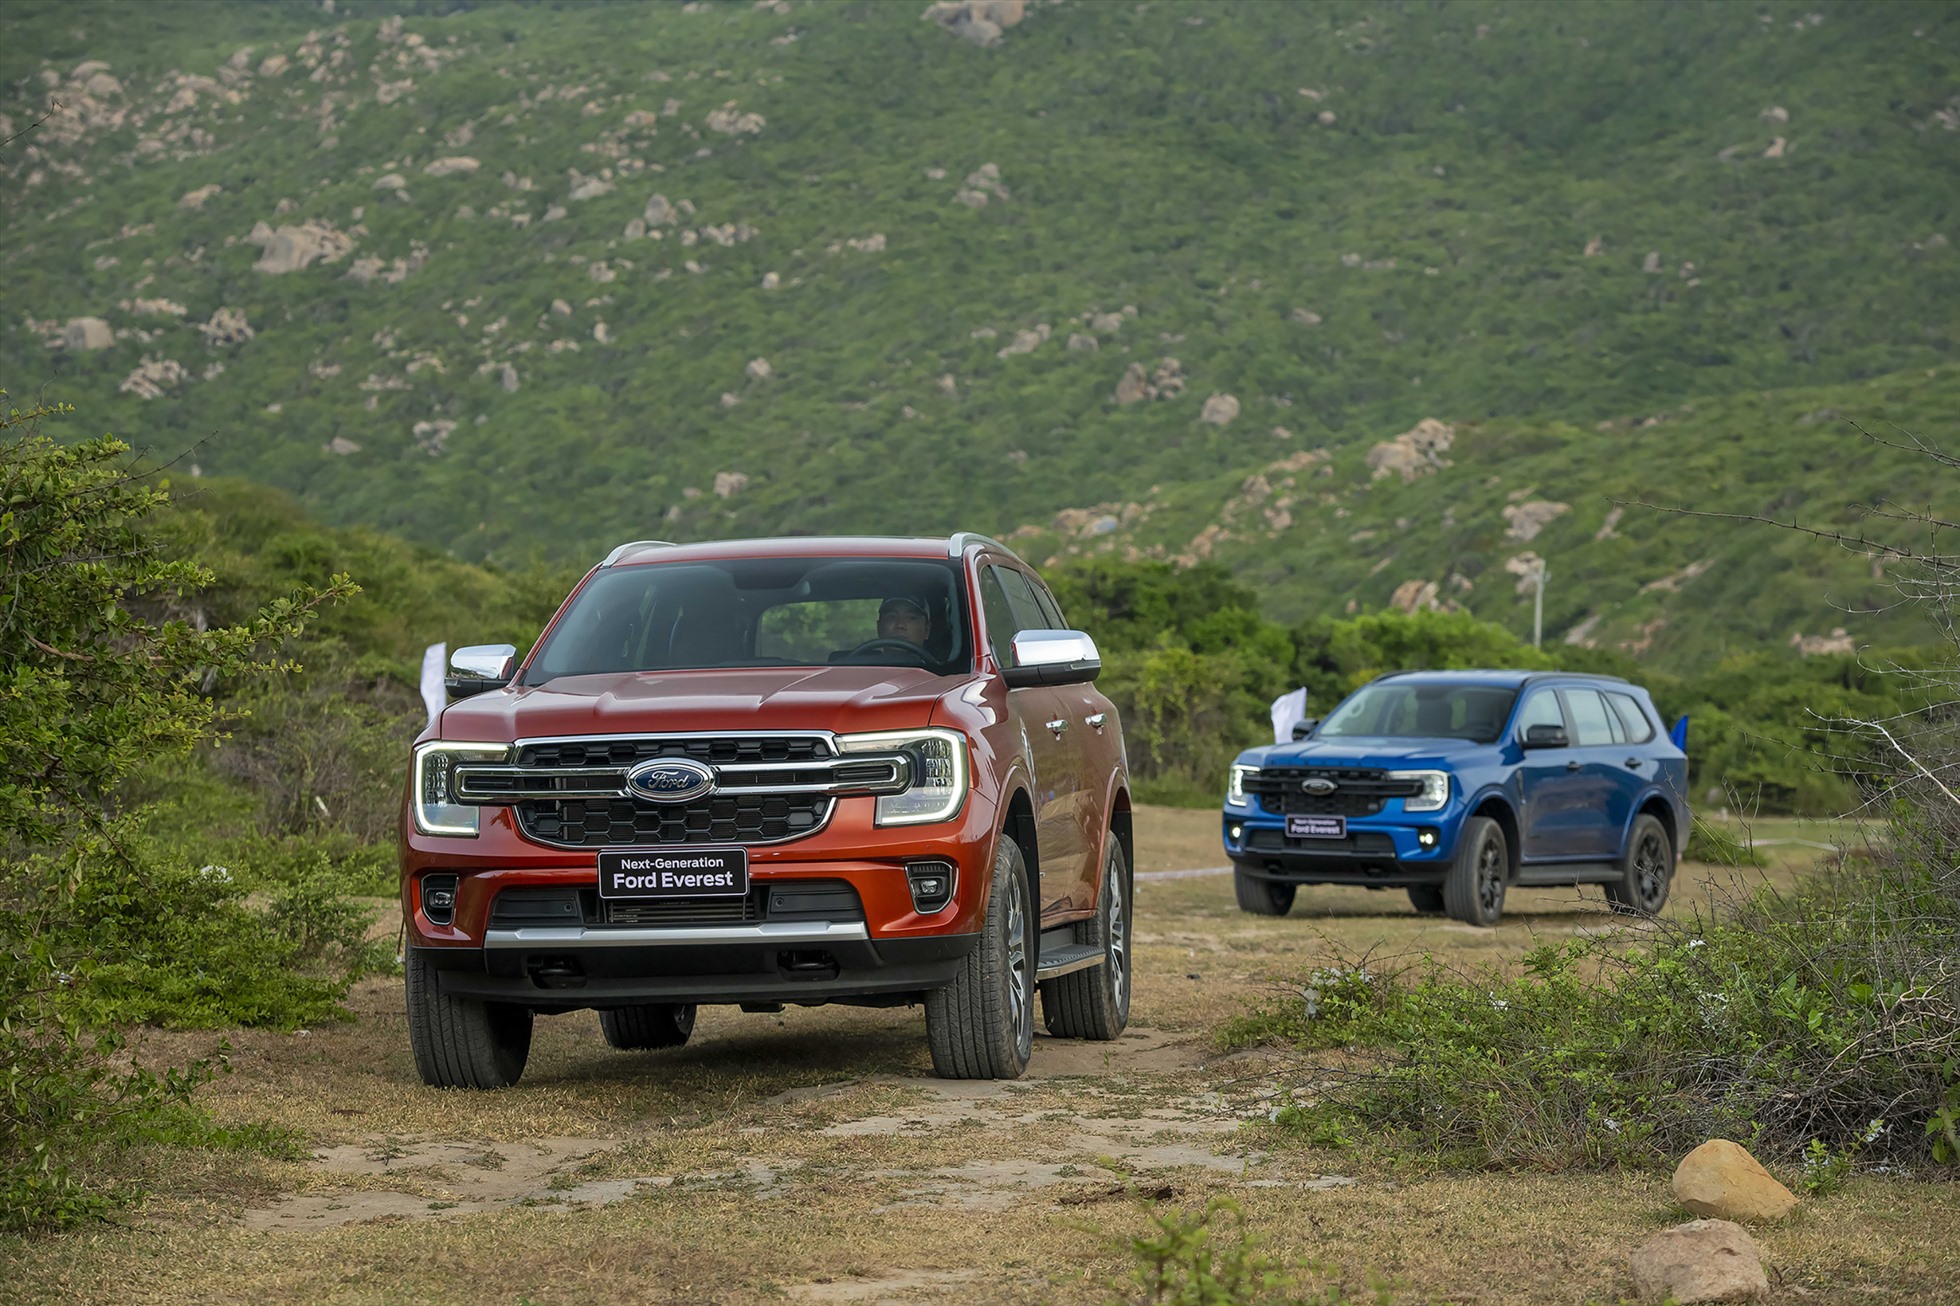 Cuộc đua doanh số SUV 7 chỗ: Ford Everest bỏ xa các đối thủ cùng phân khúc